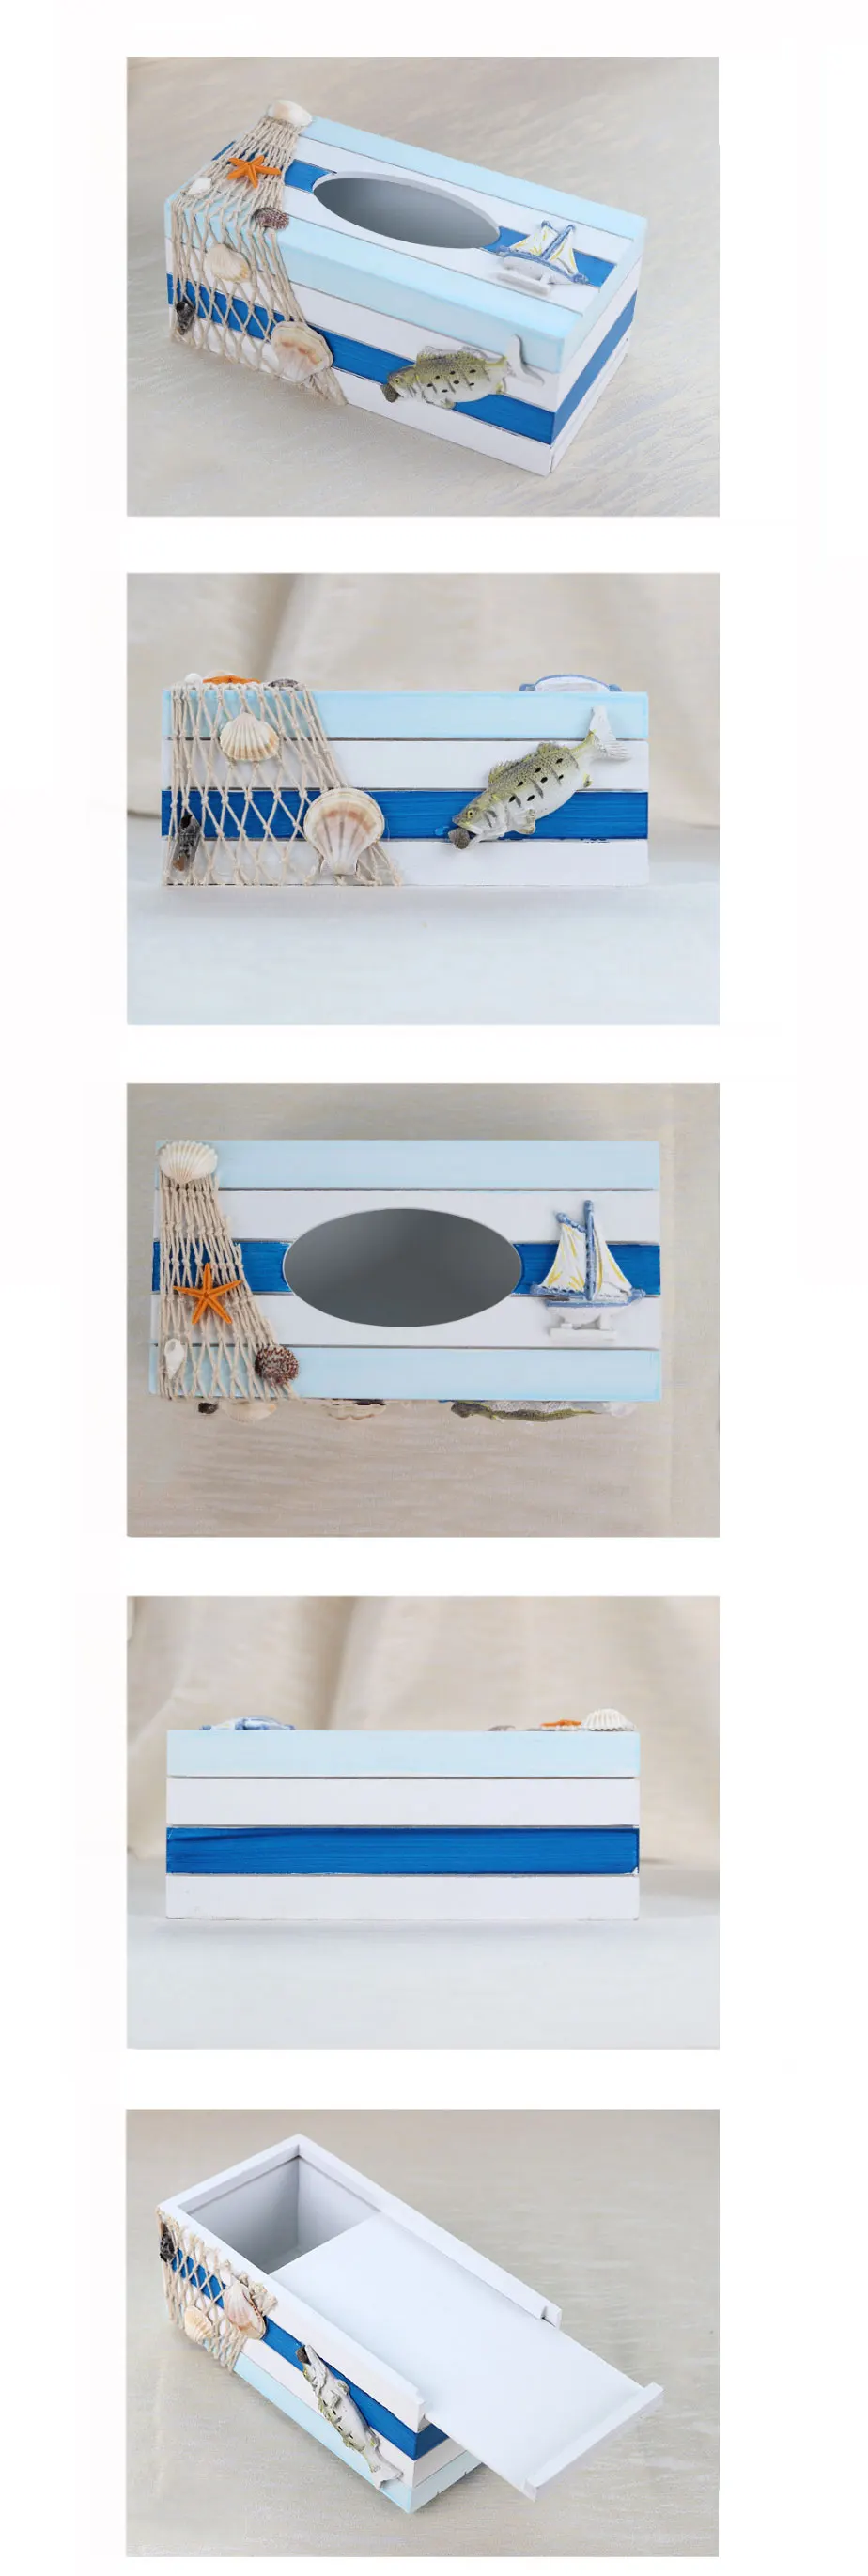 Средиземноморская креативная деревянная коробка для салфеток Многофункциональный поднос для салфеток ванная комната гостиничный поднос украшение дома хранение